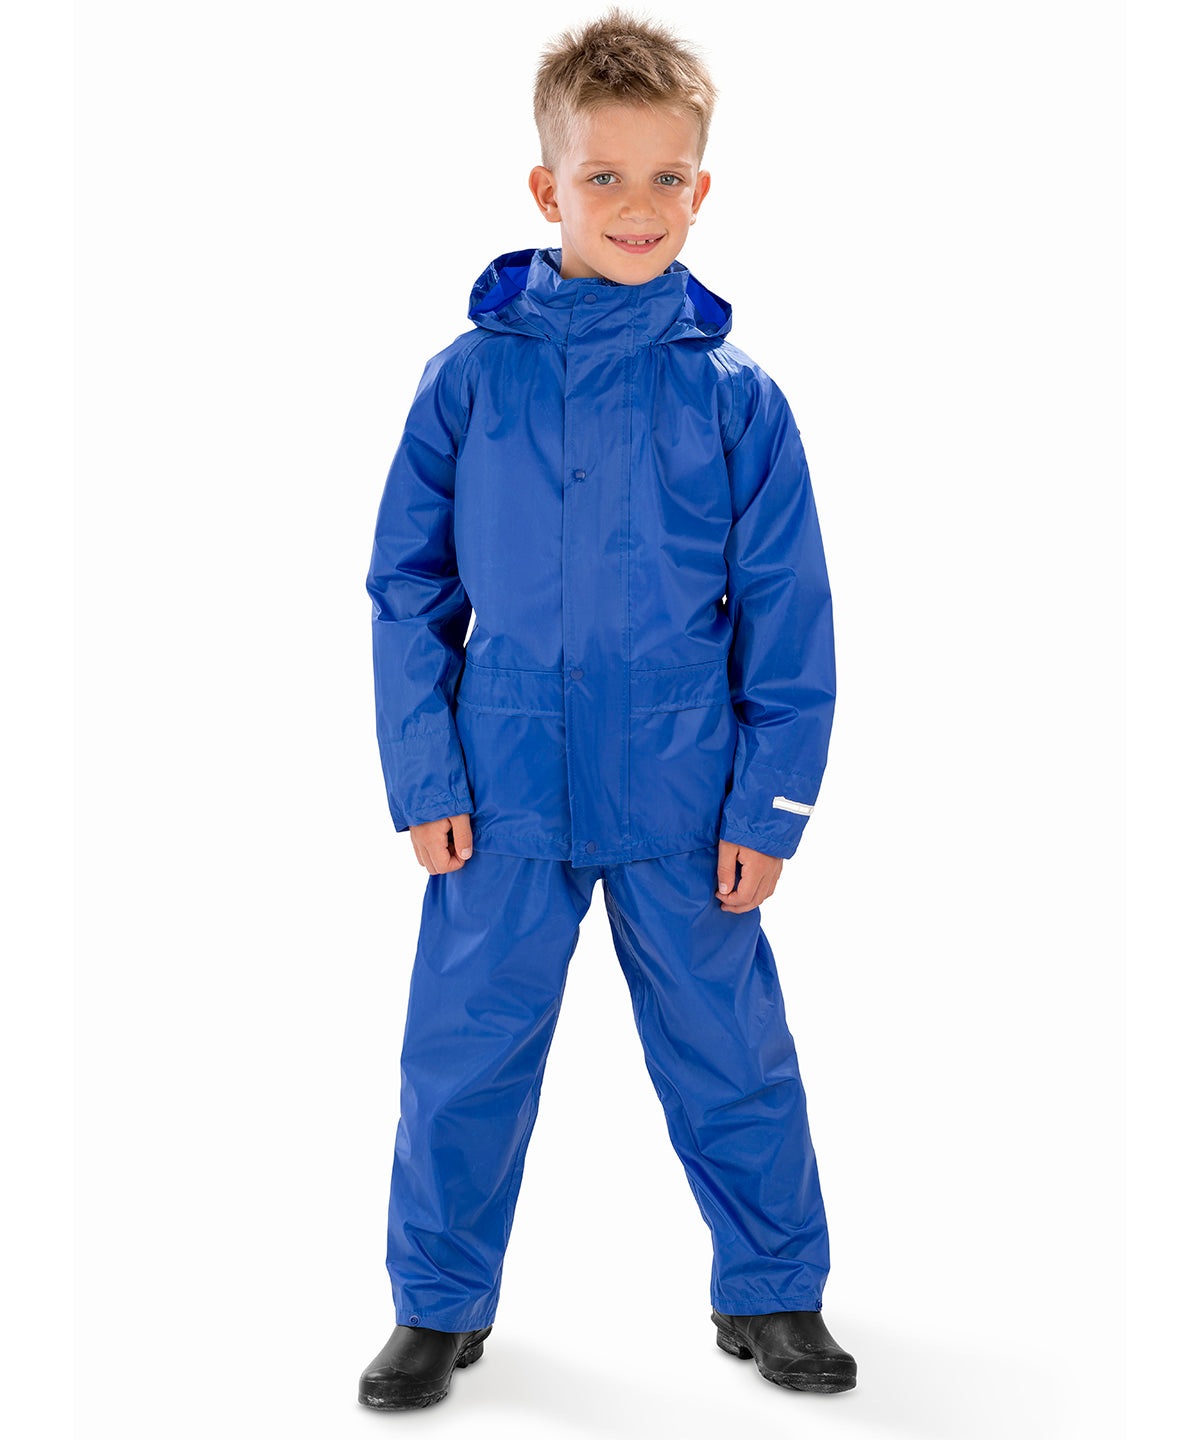 Core junior rain suit